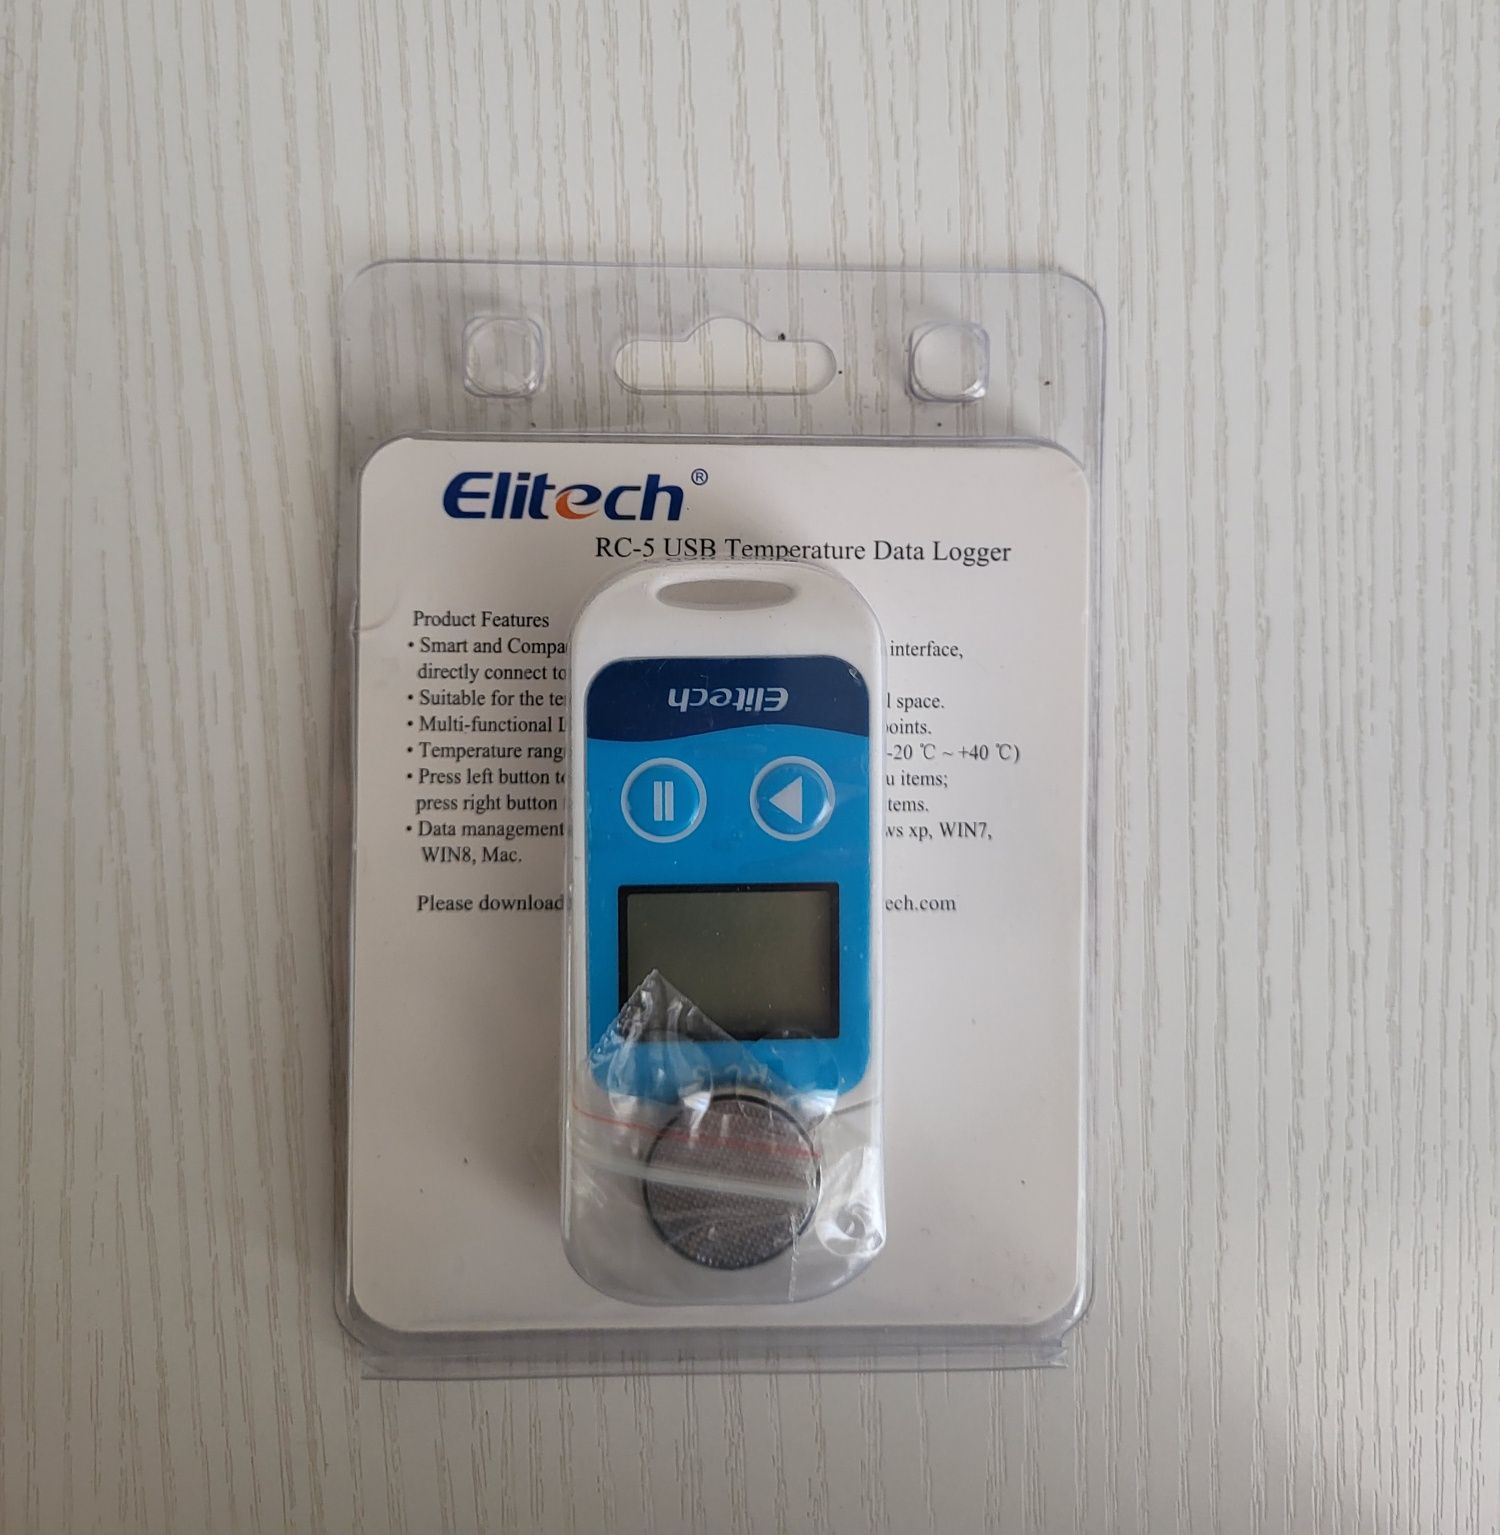 Elitech rc-5 usb temperature data logger